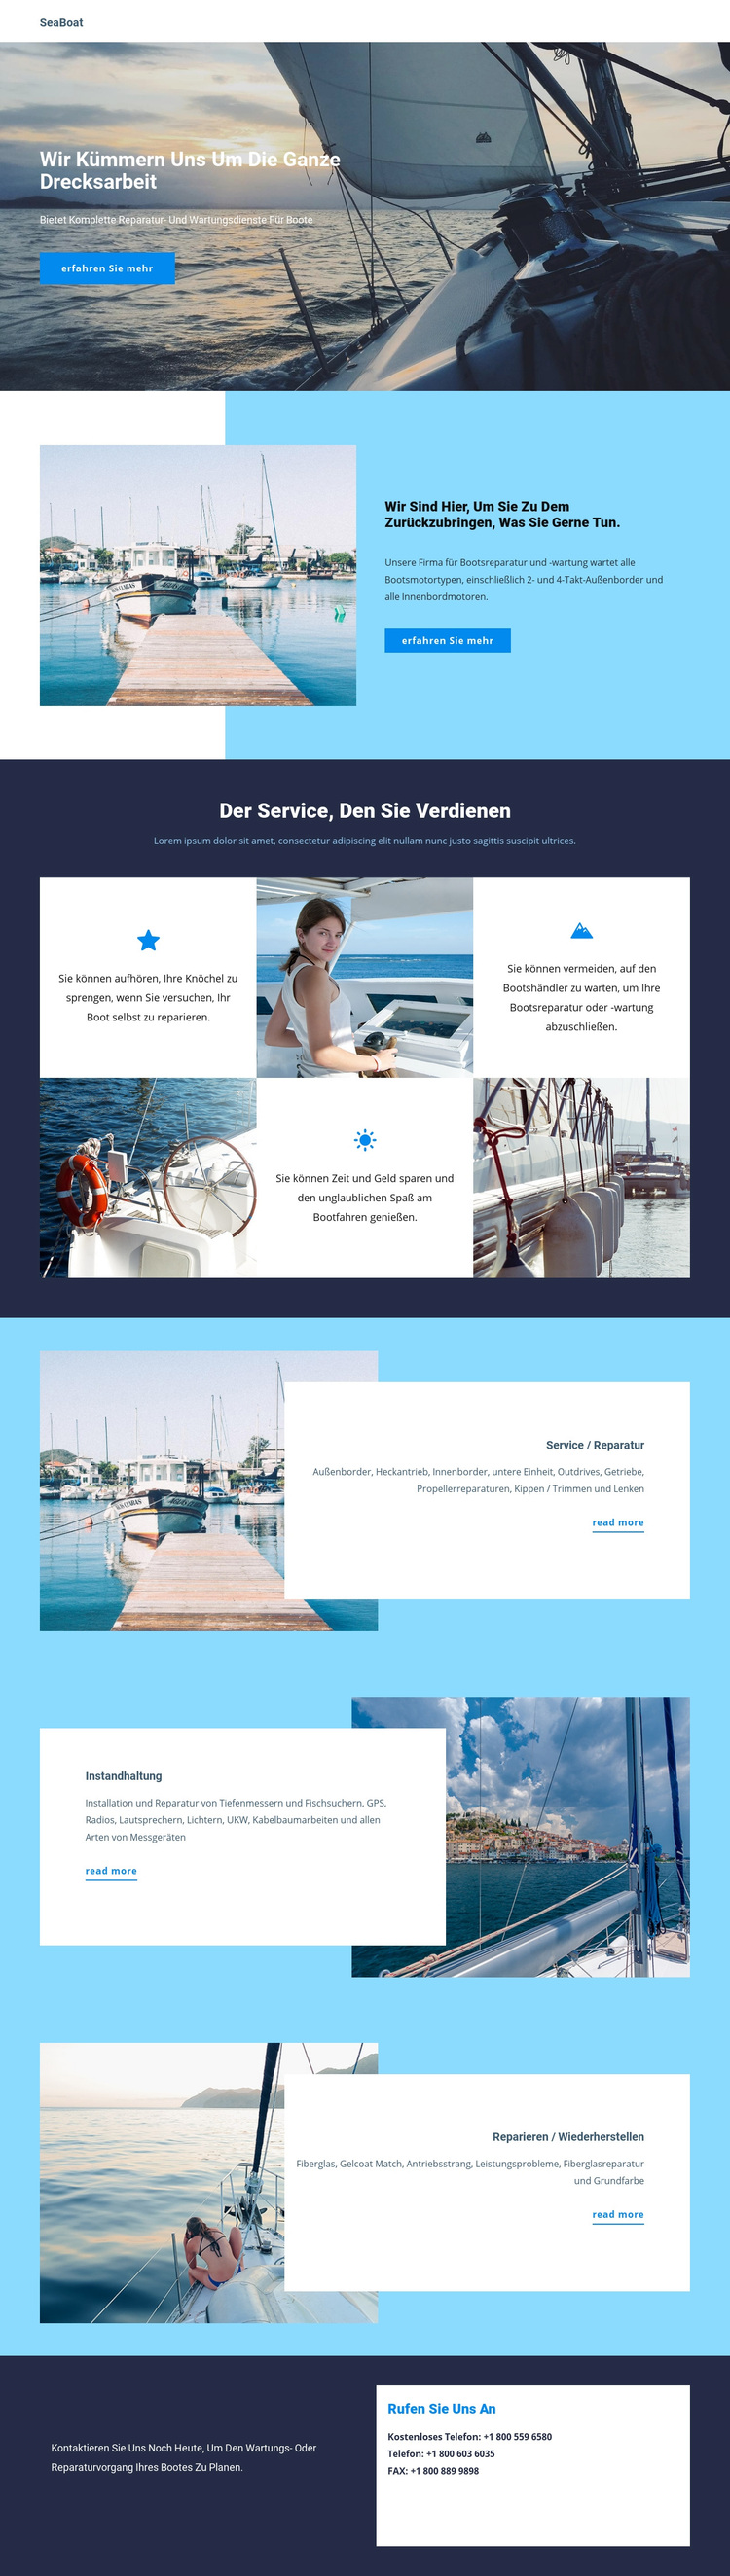 Reisen Sie mit dem Seeboot WordPress-Theme